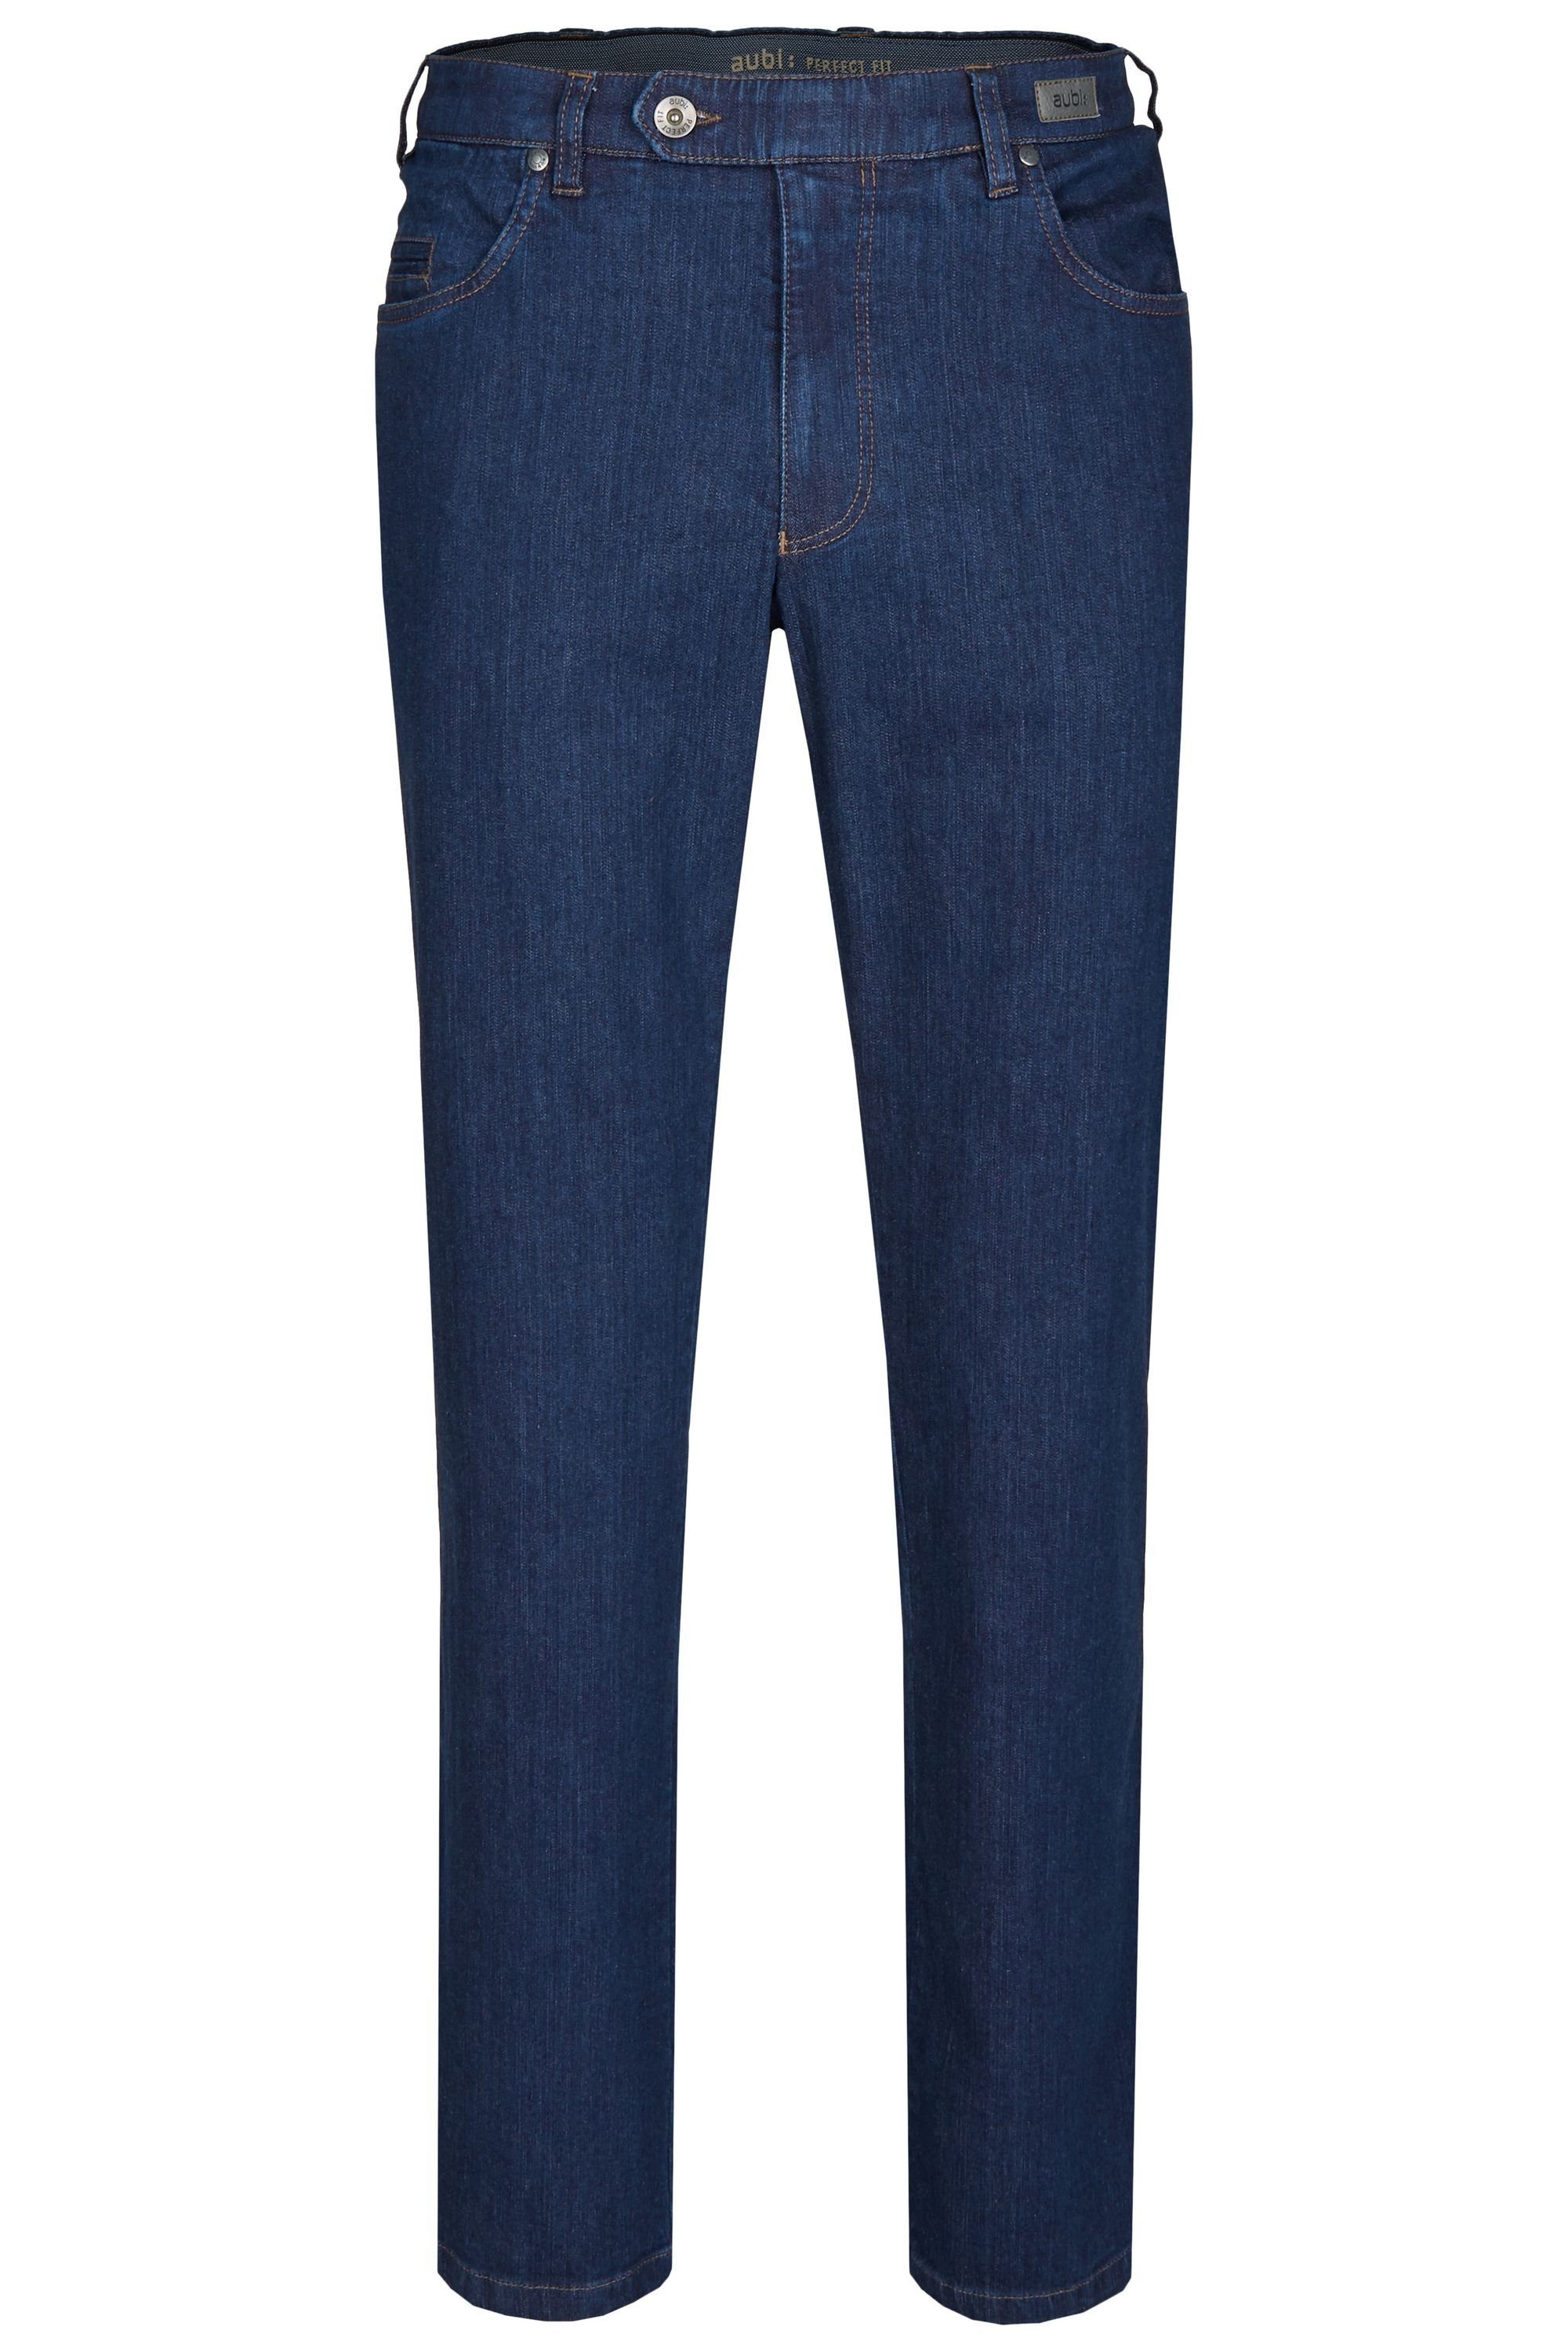 Baumwolle aubi: Herren Ganzjahres Hose Stretch Modell Jeans stone (48) Perfect Fit aus Bequeme aubi High Jeans 577 dark Flex